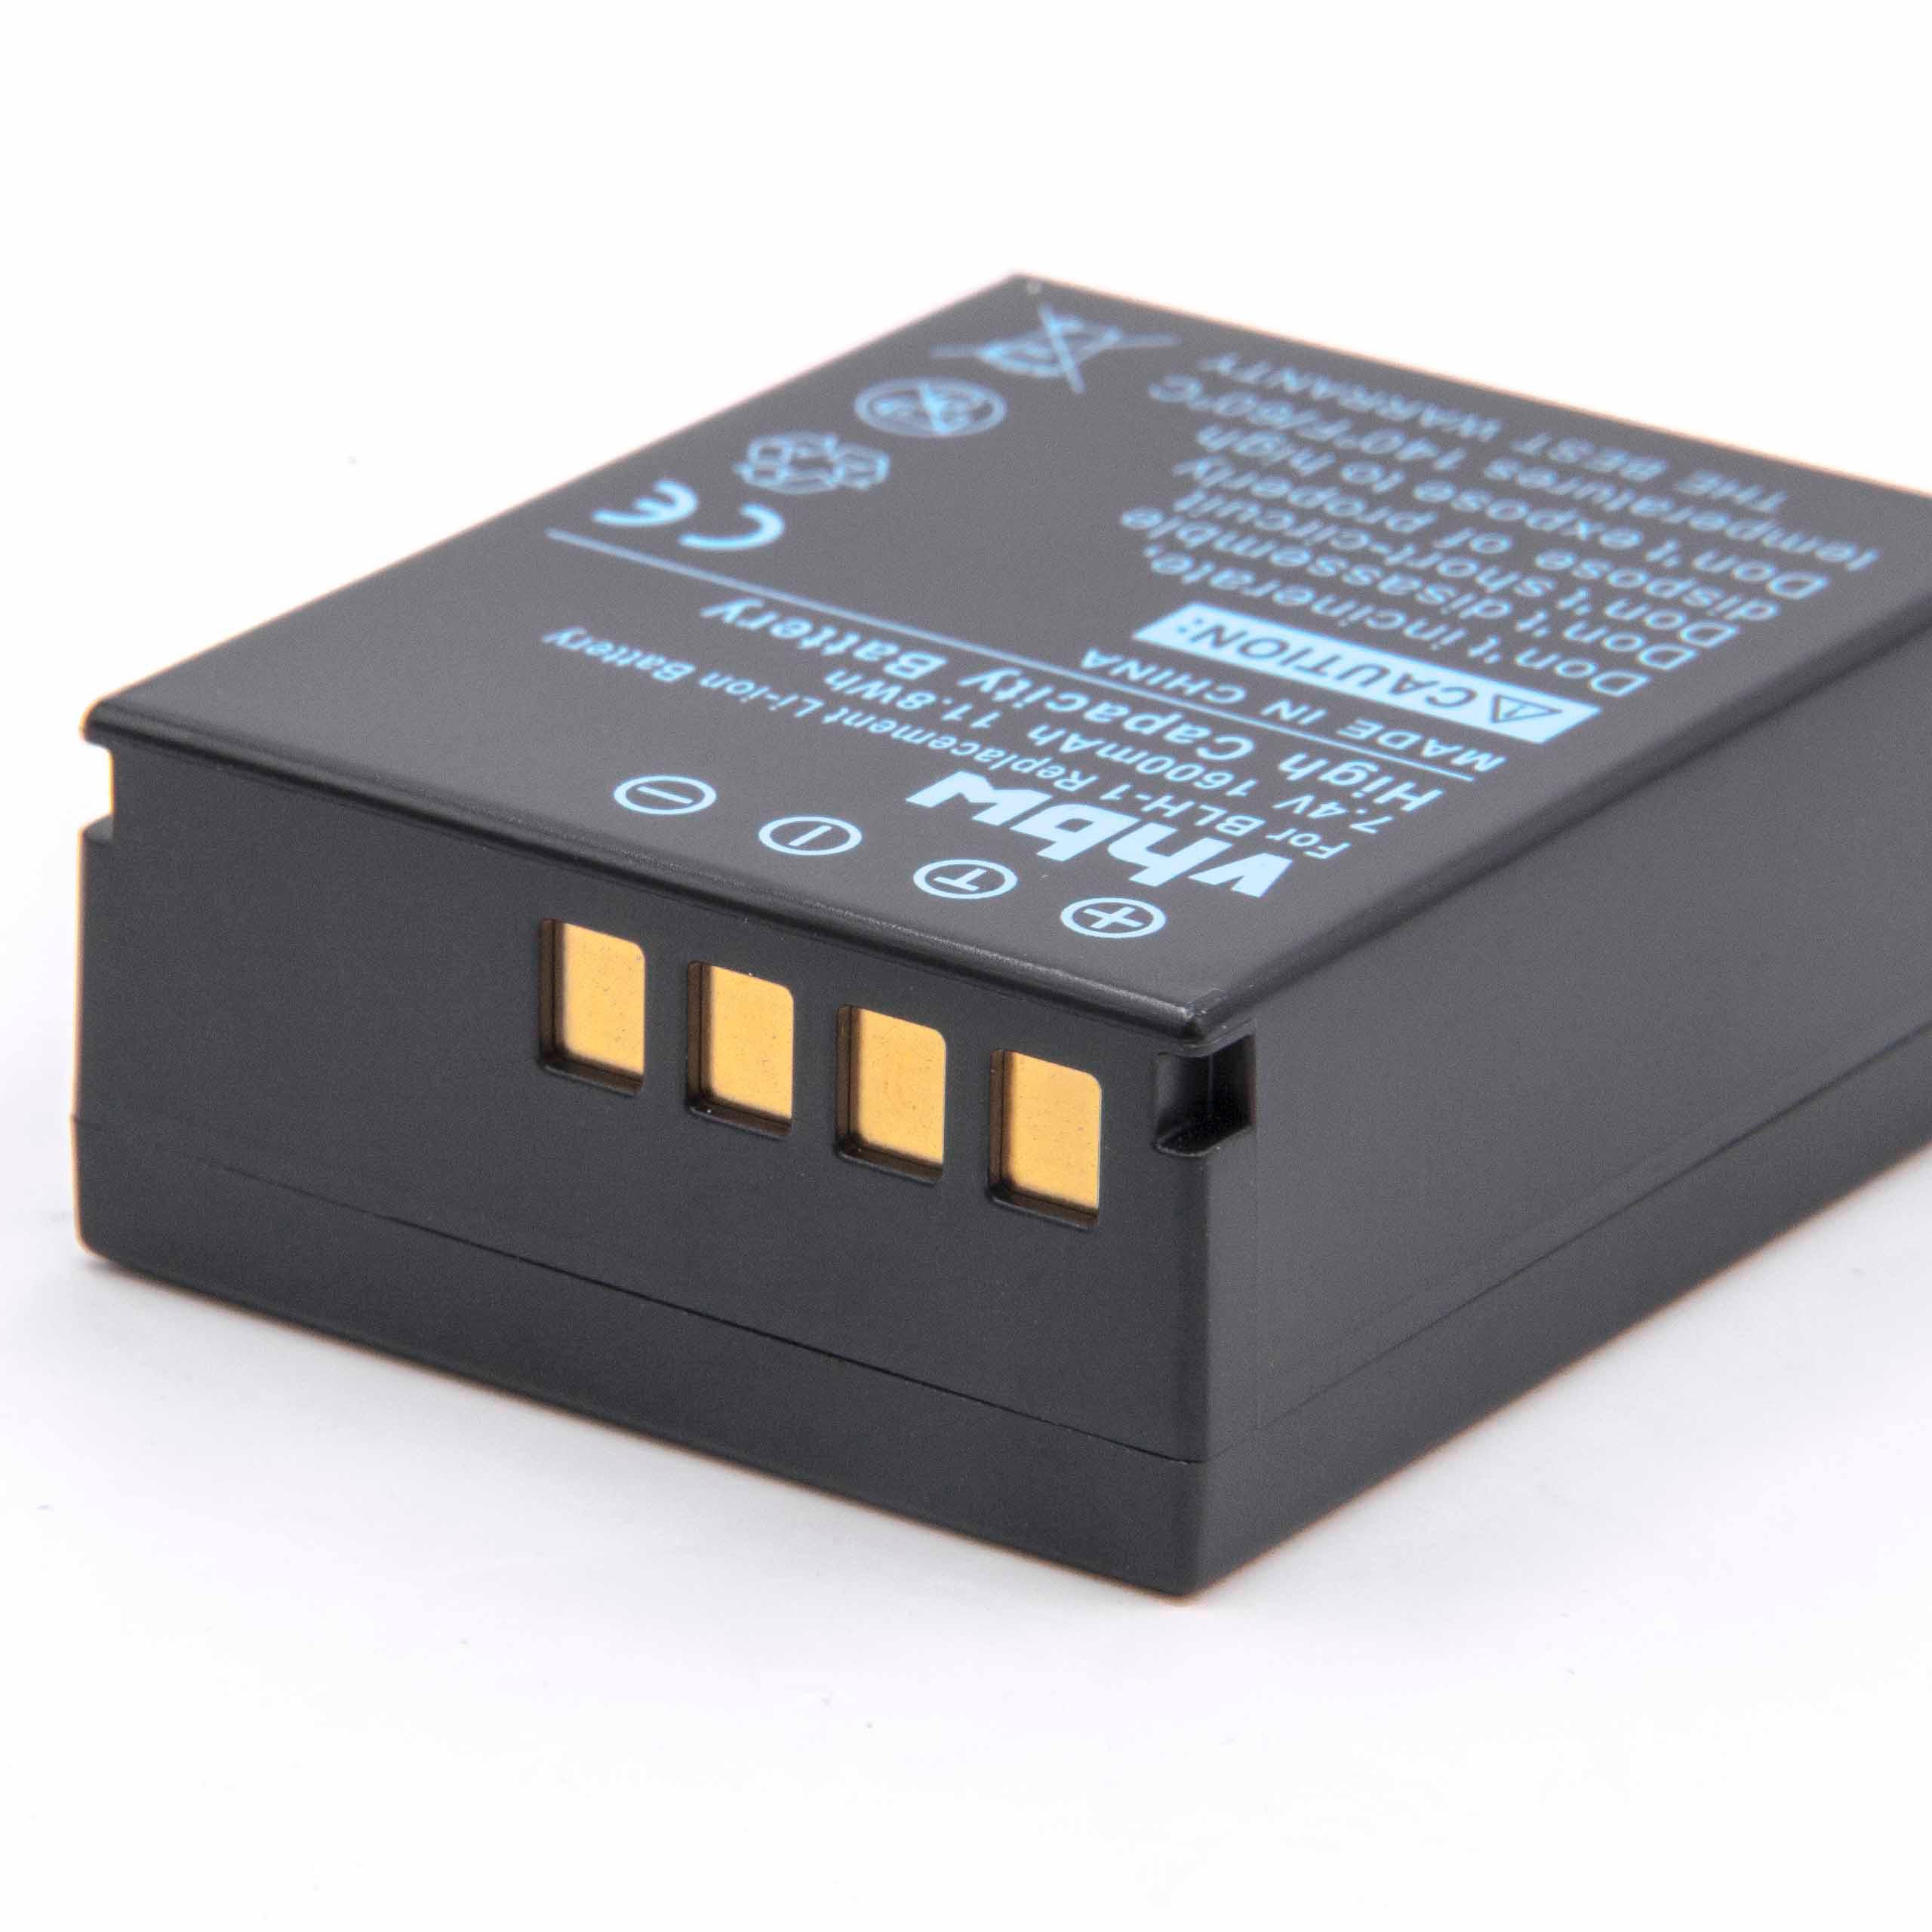 Batterie remplace Olympus BLH-1 pour appareil photo - 1600mAh 7,4V Li-ion